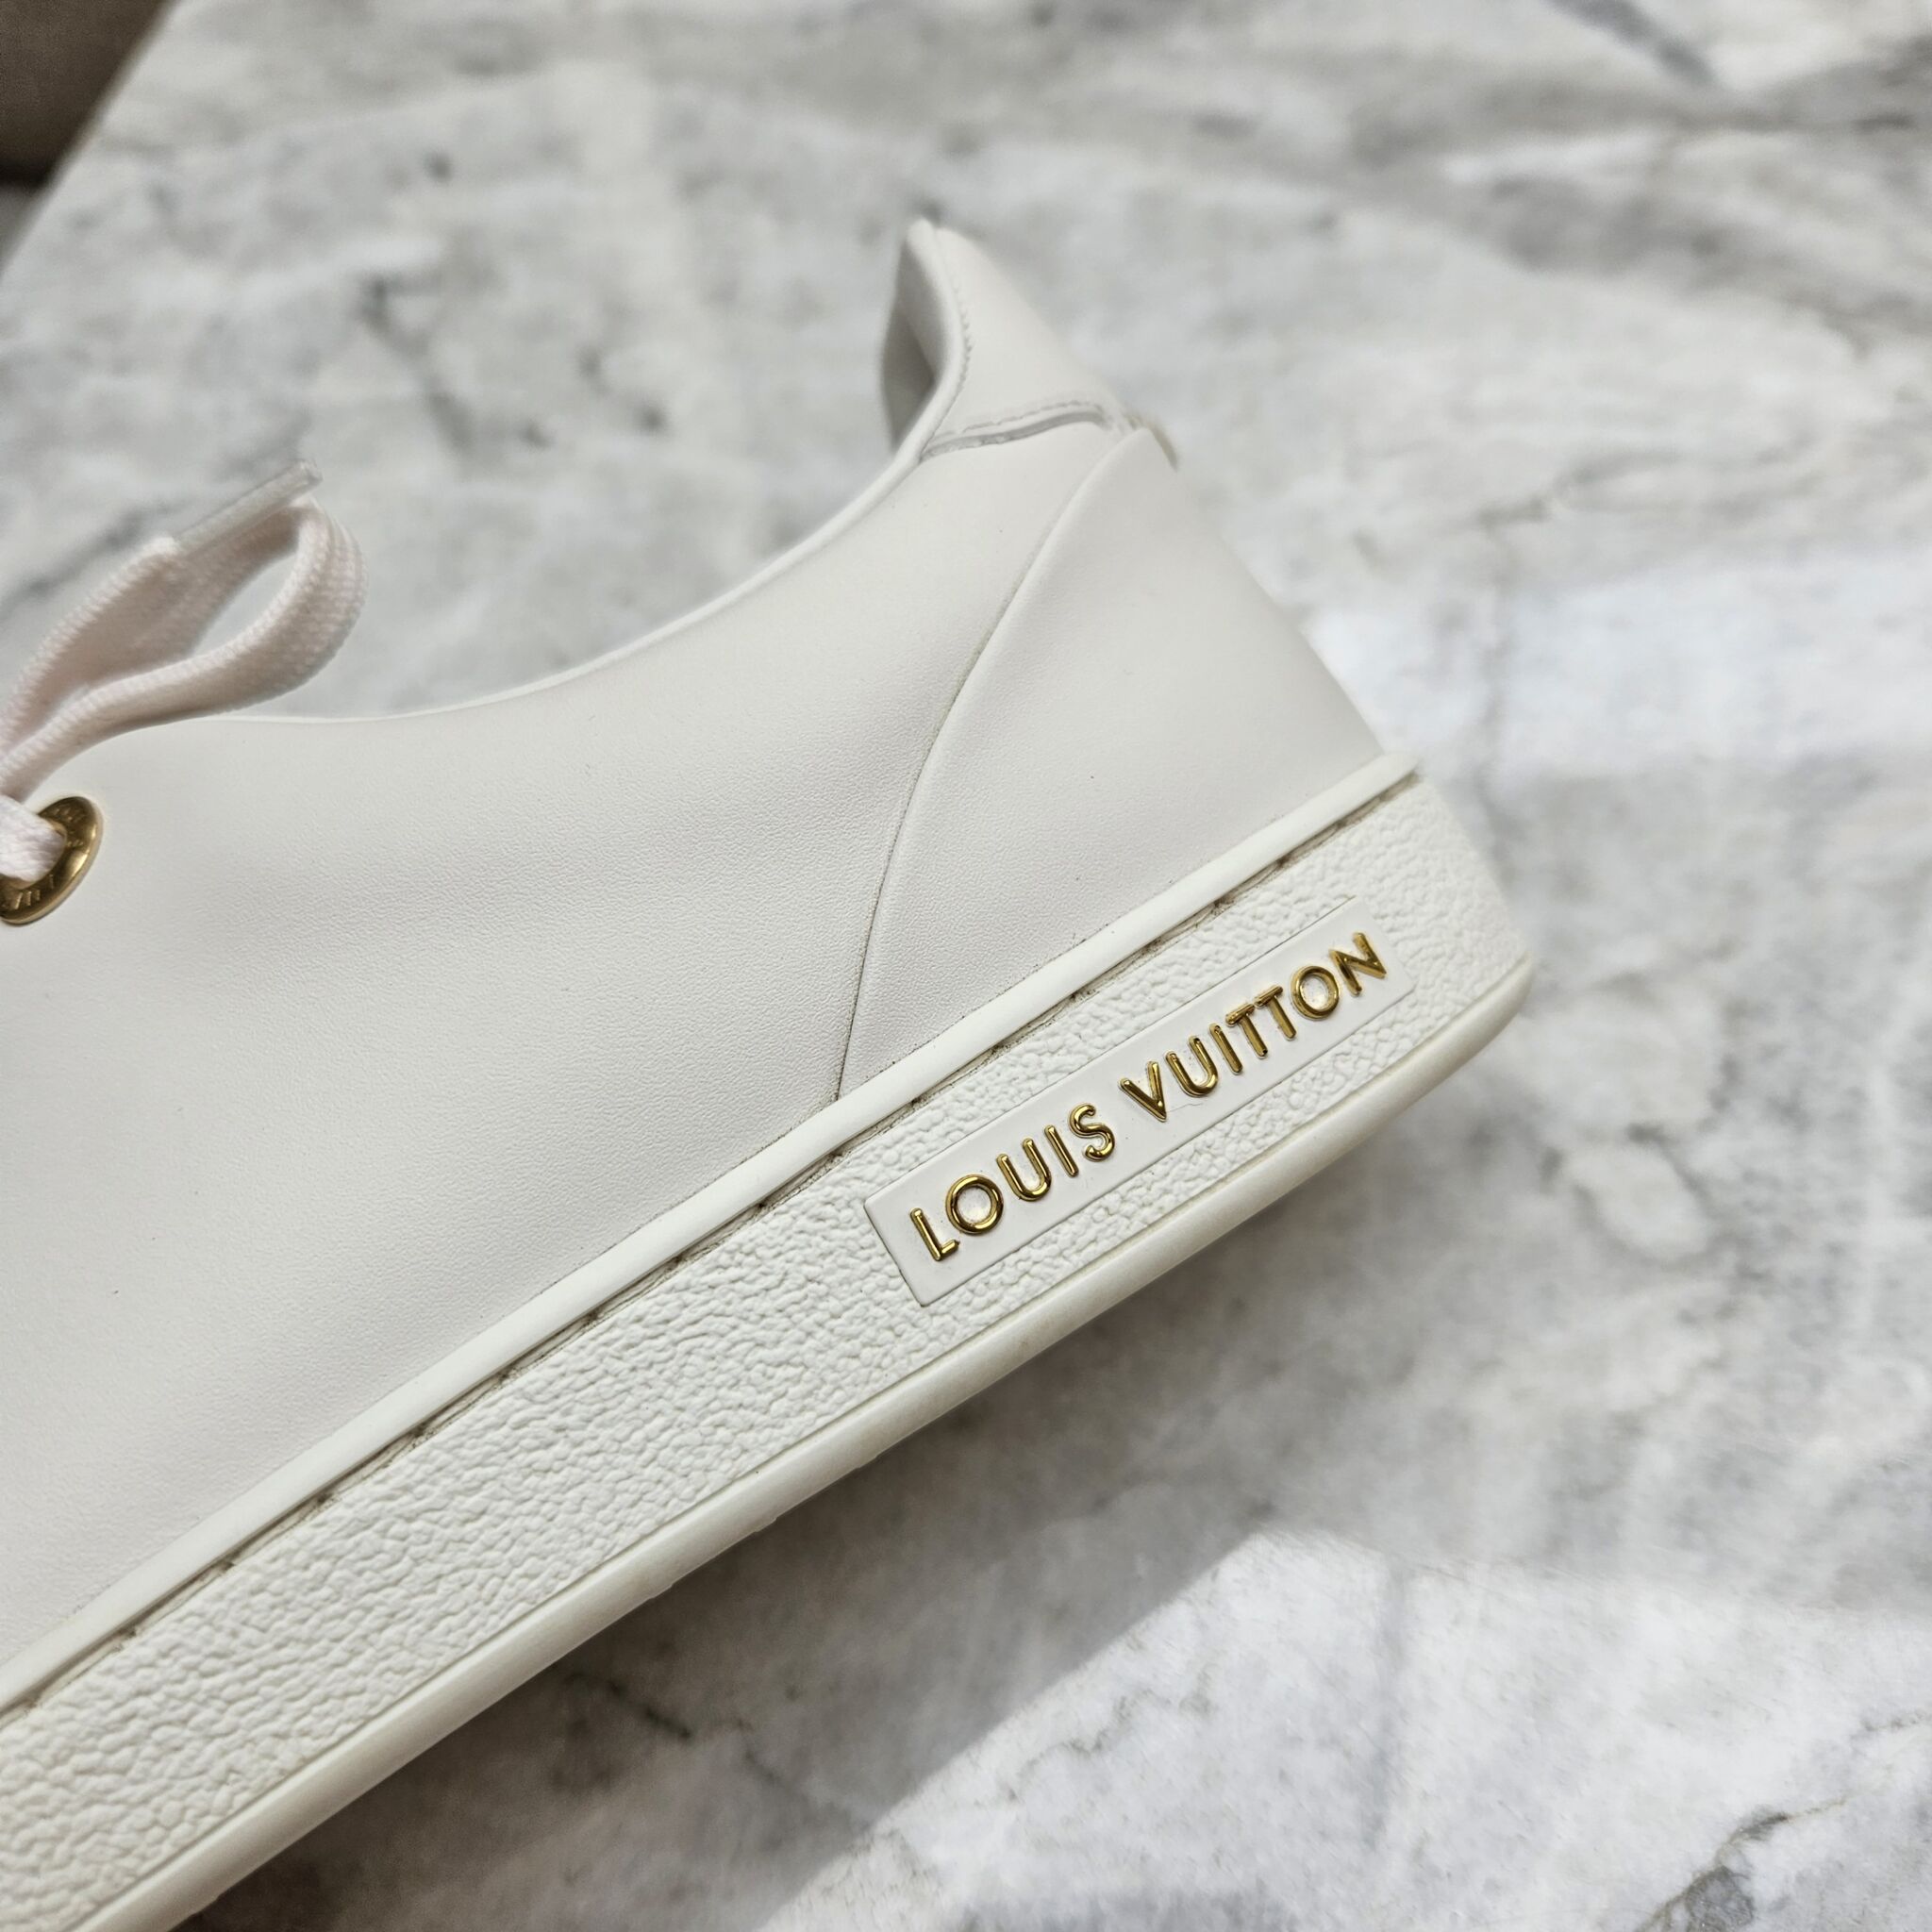 Louis Vuitton Frontrow Leather White White Gold (Women's) - 1A2XOM